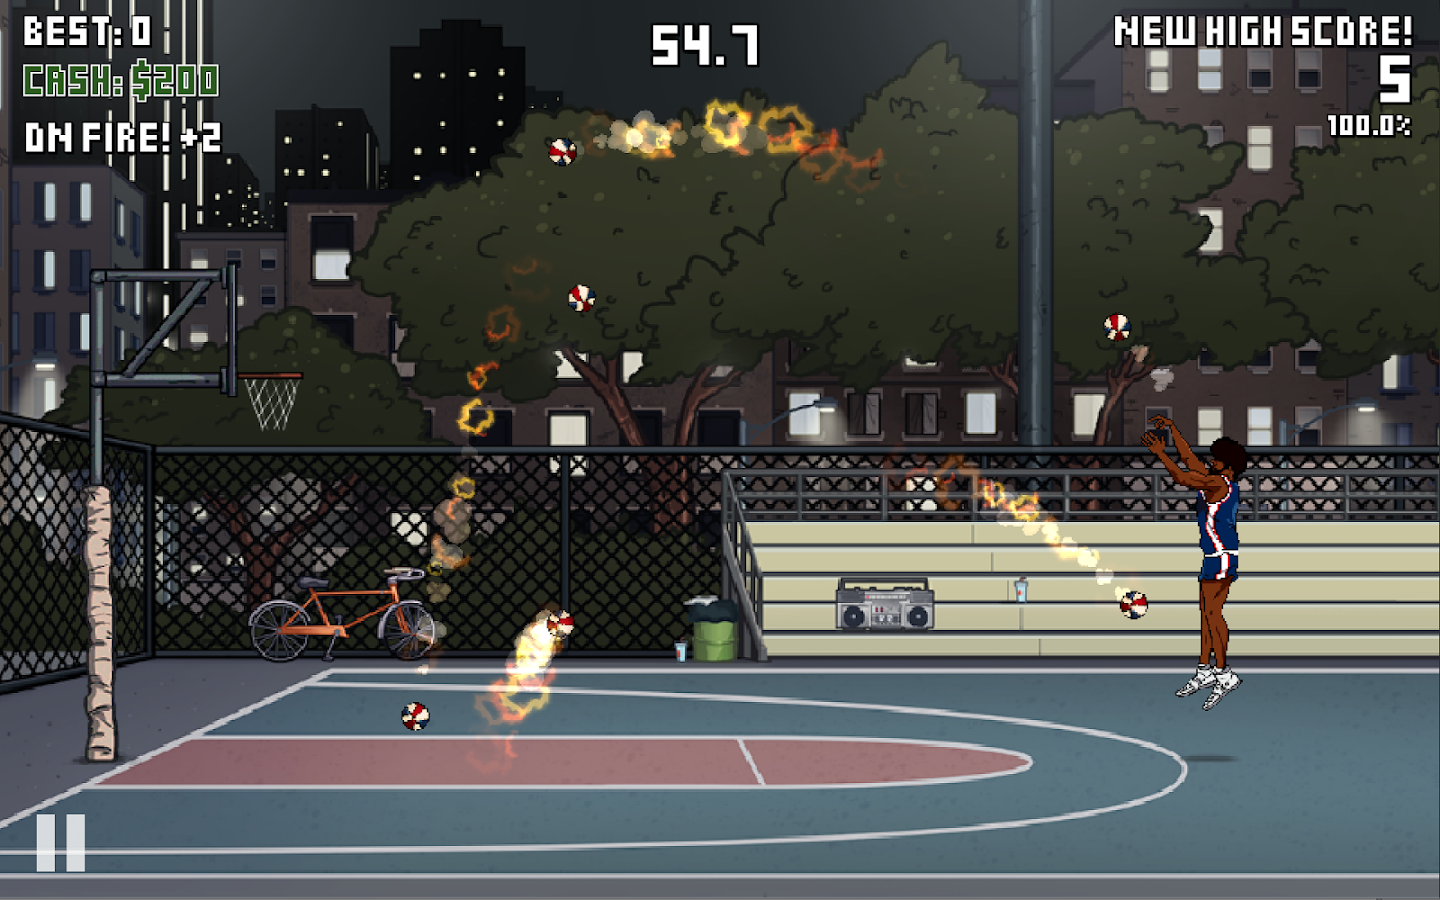 Игра случайный баскетбол. Пиксельная игра про баскетбол. Game time Basketball. Игра про баскетбол на андроид с видом от 3 лица. Игра на андроид в баскетбол по сети на время.